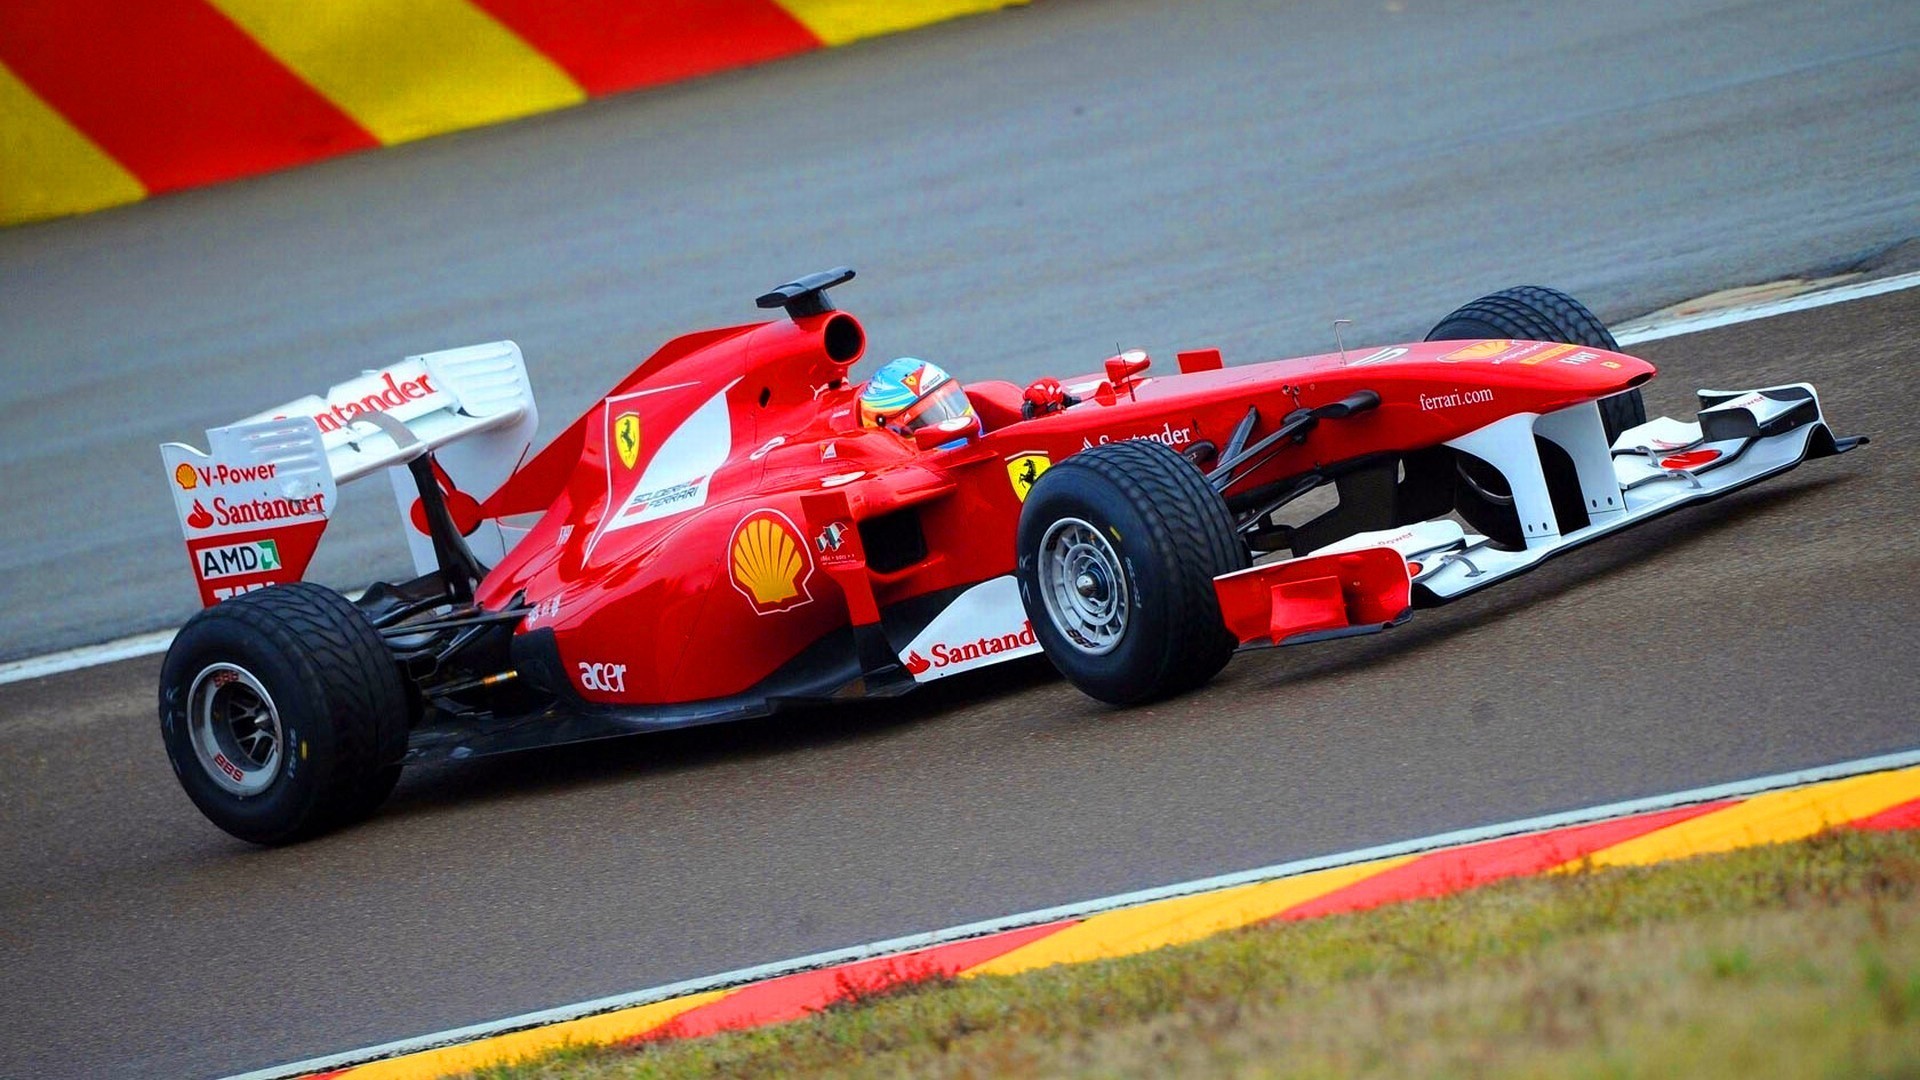 General 1920x1080 race cars racing red cars vehicle sport car motorsport Formula 1 Scuderia Ferrari italian cars